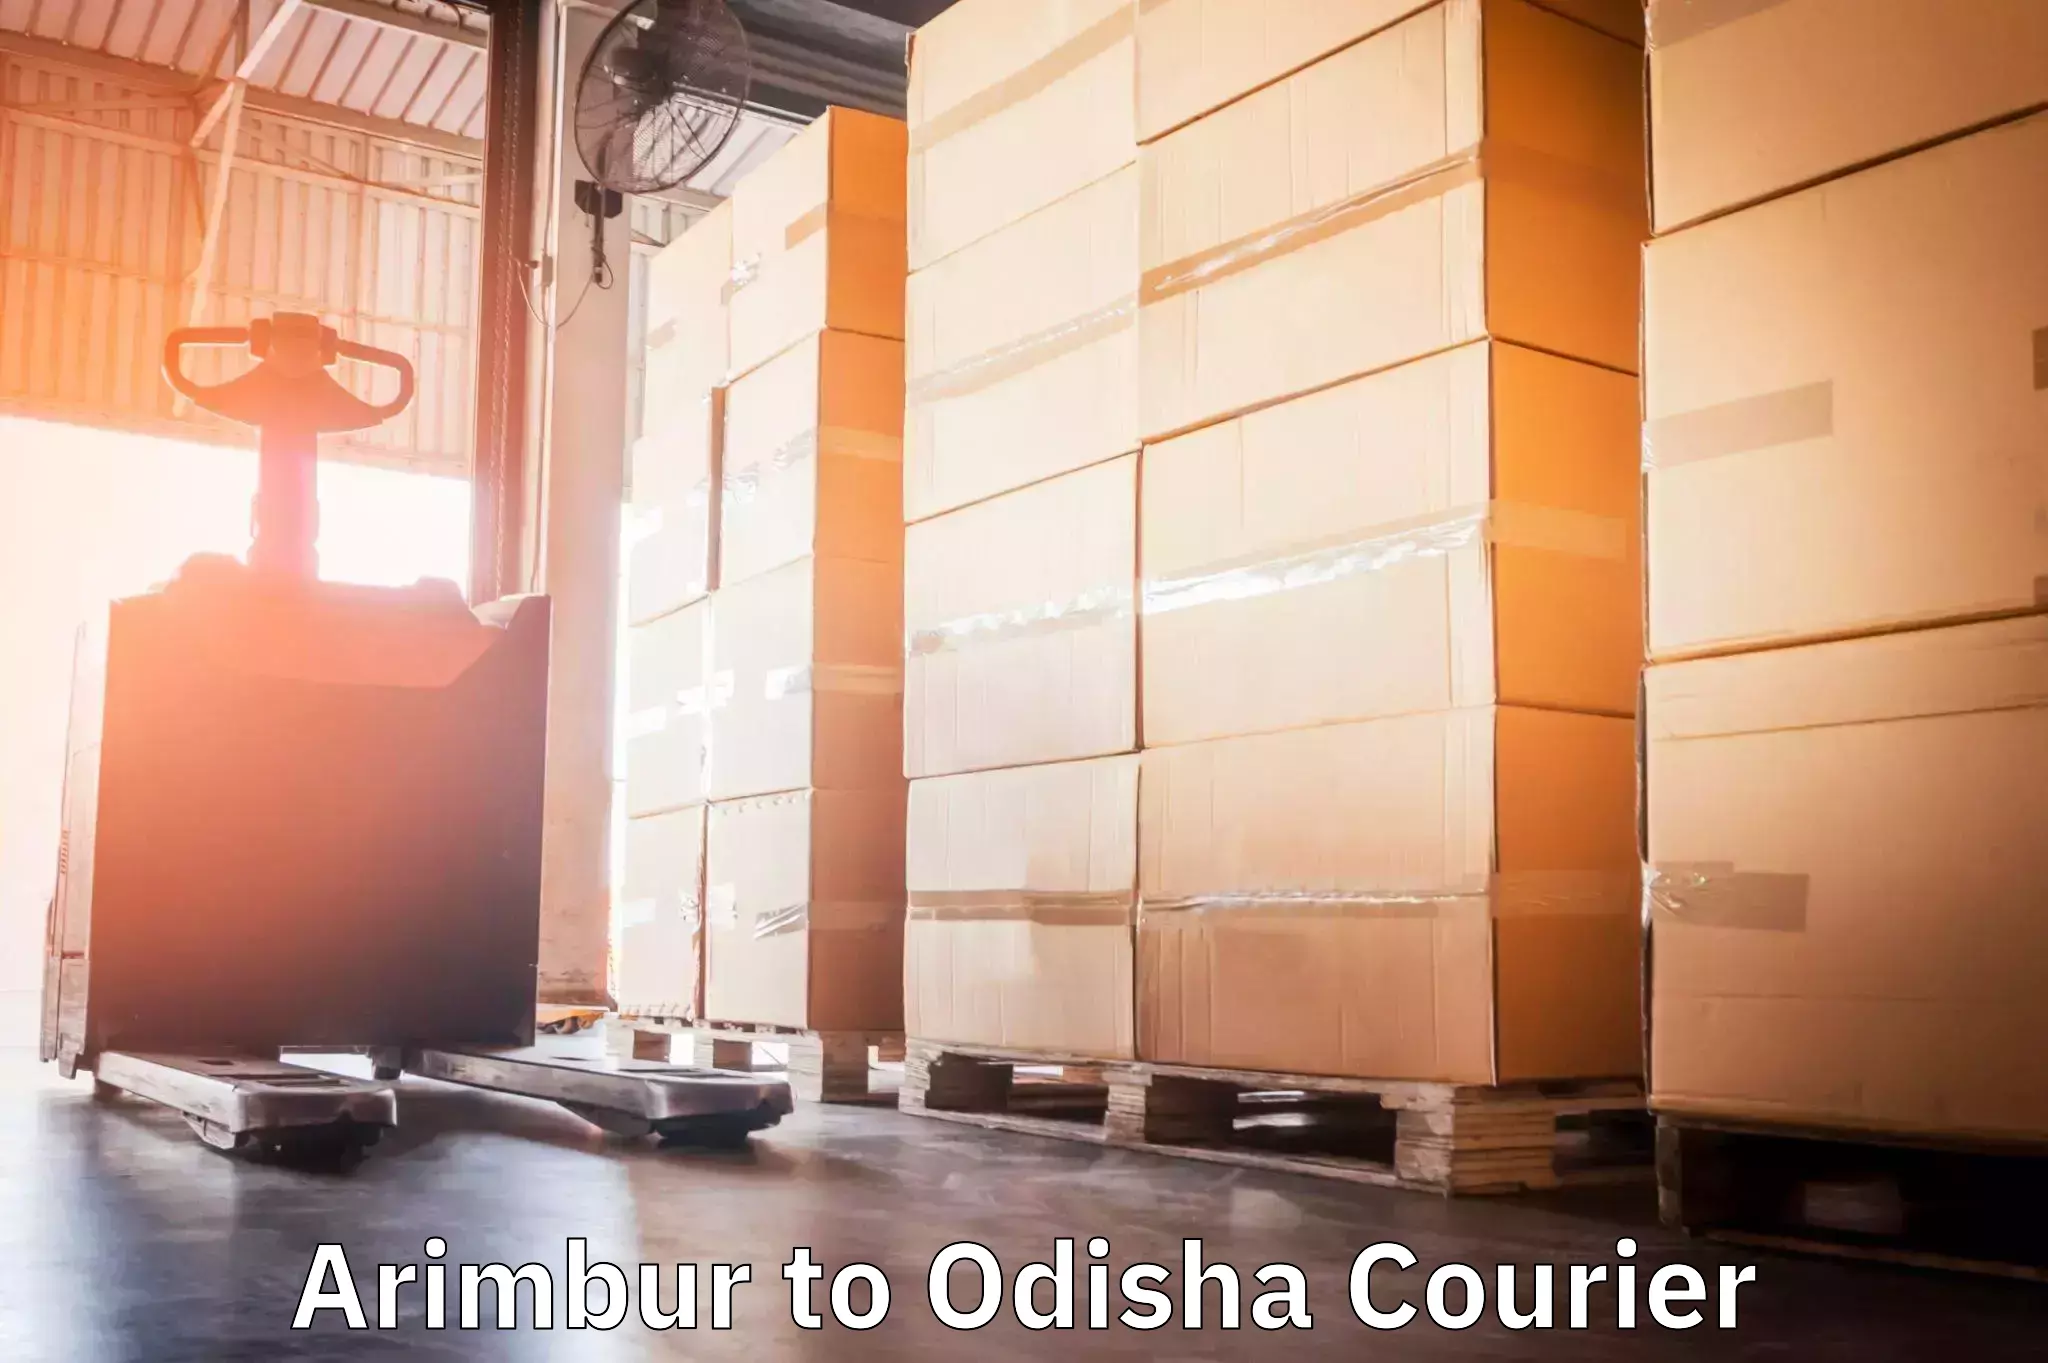 Premium courier services Arimbur to Mathili